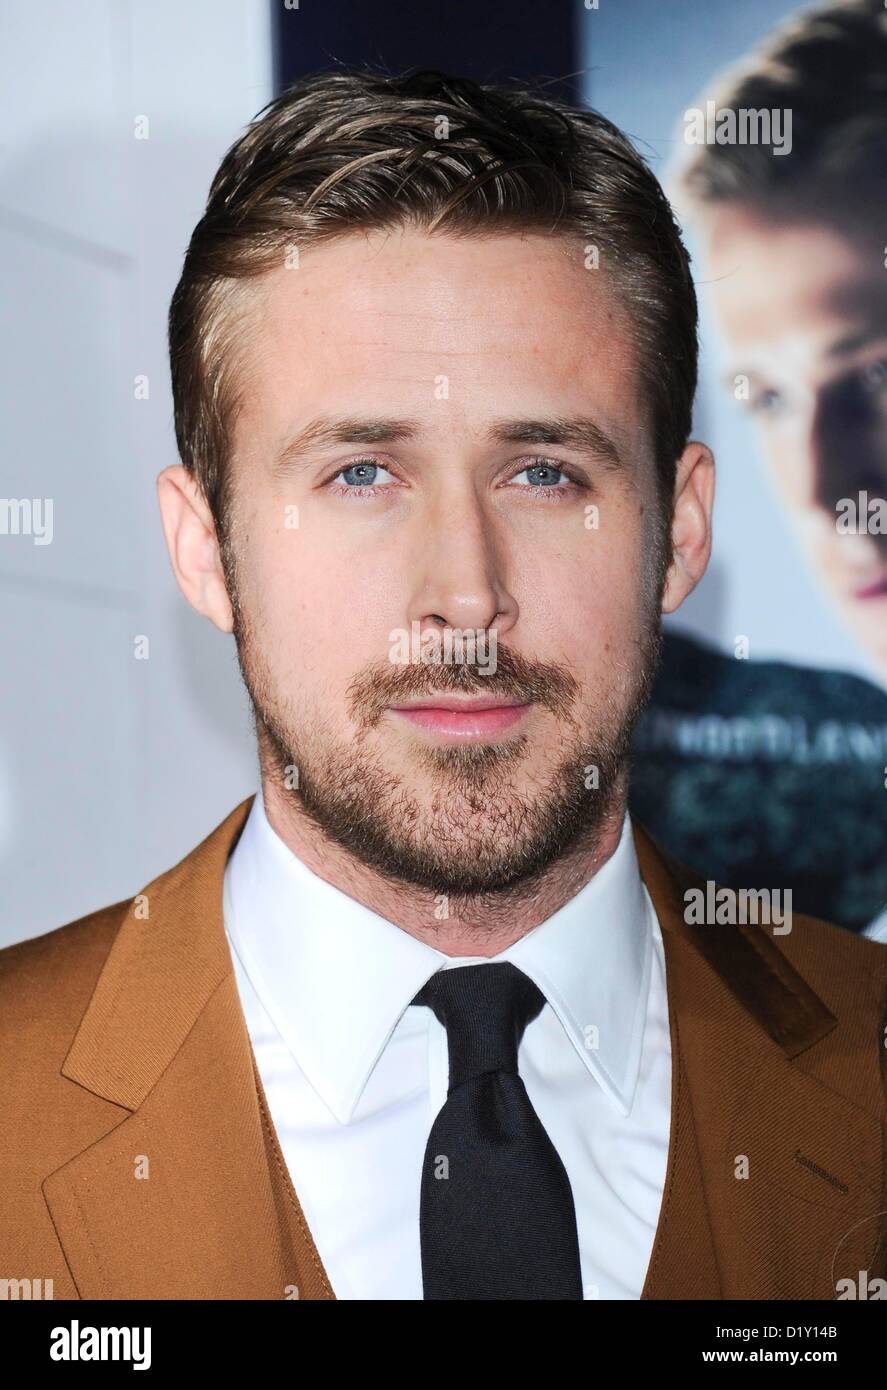 Schauspieler Ryan Gosling kommt bei der Filmpremiere für "Gangster Squad" in das Chinese Theatre in Hollywood, USA 7. Januar 2013 Stockfoto